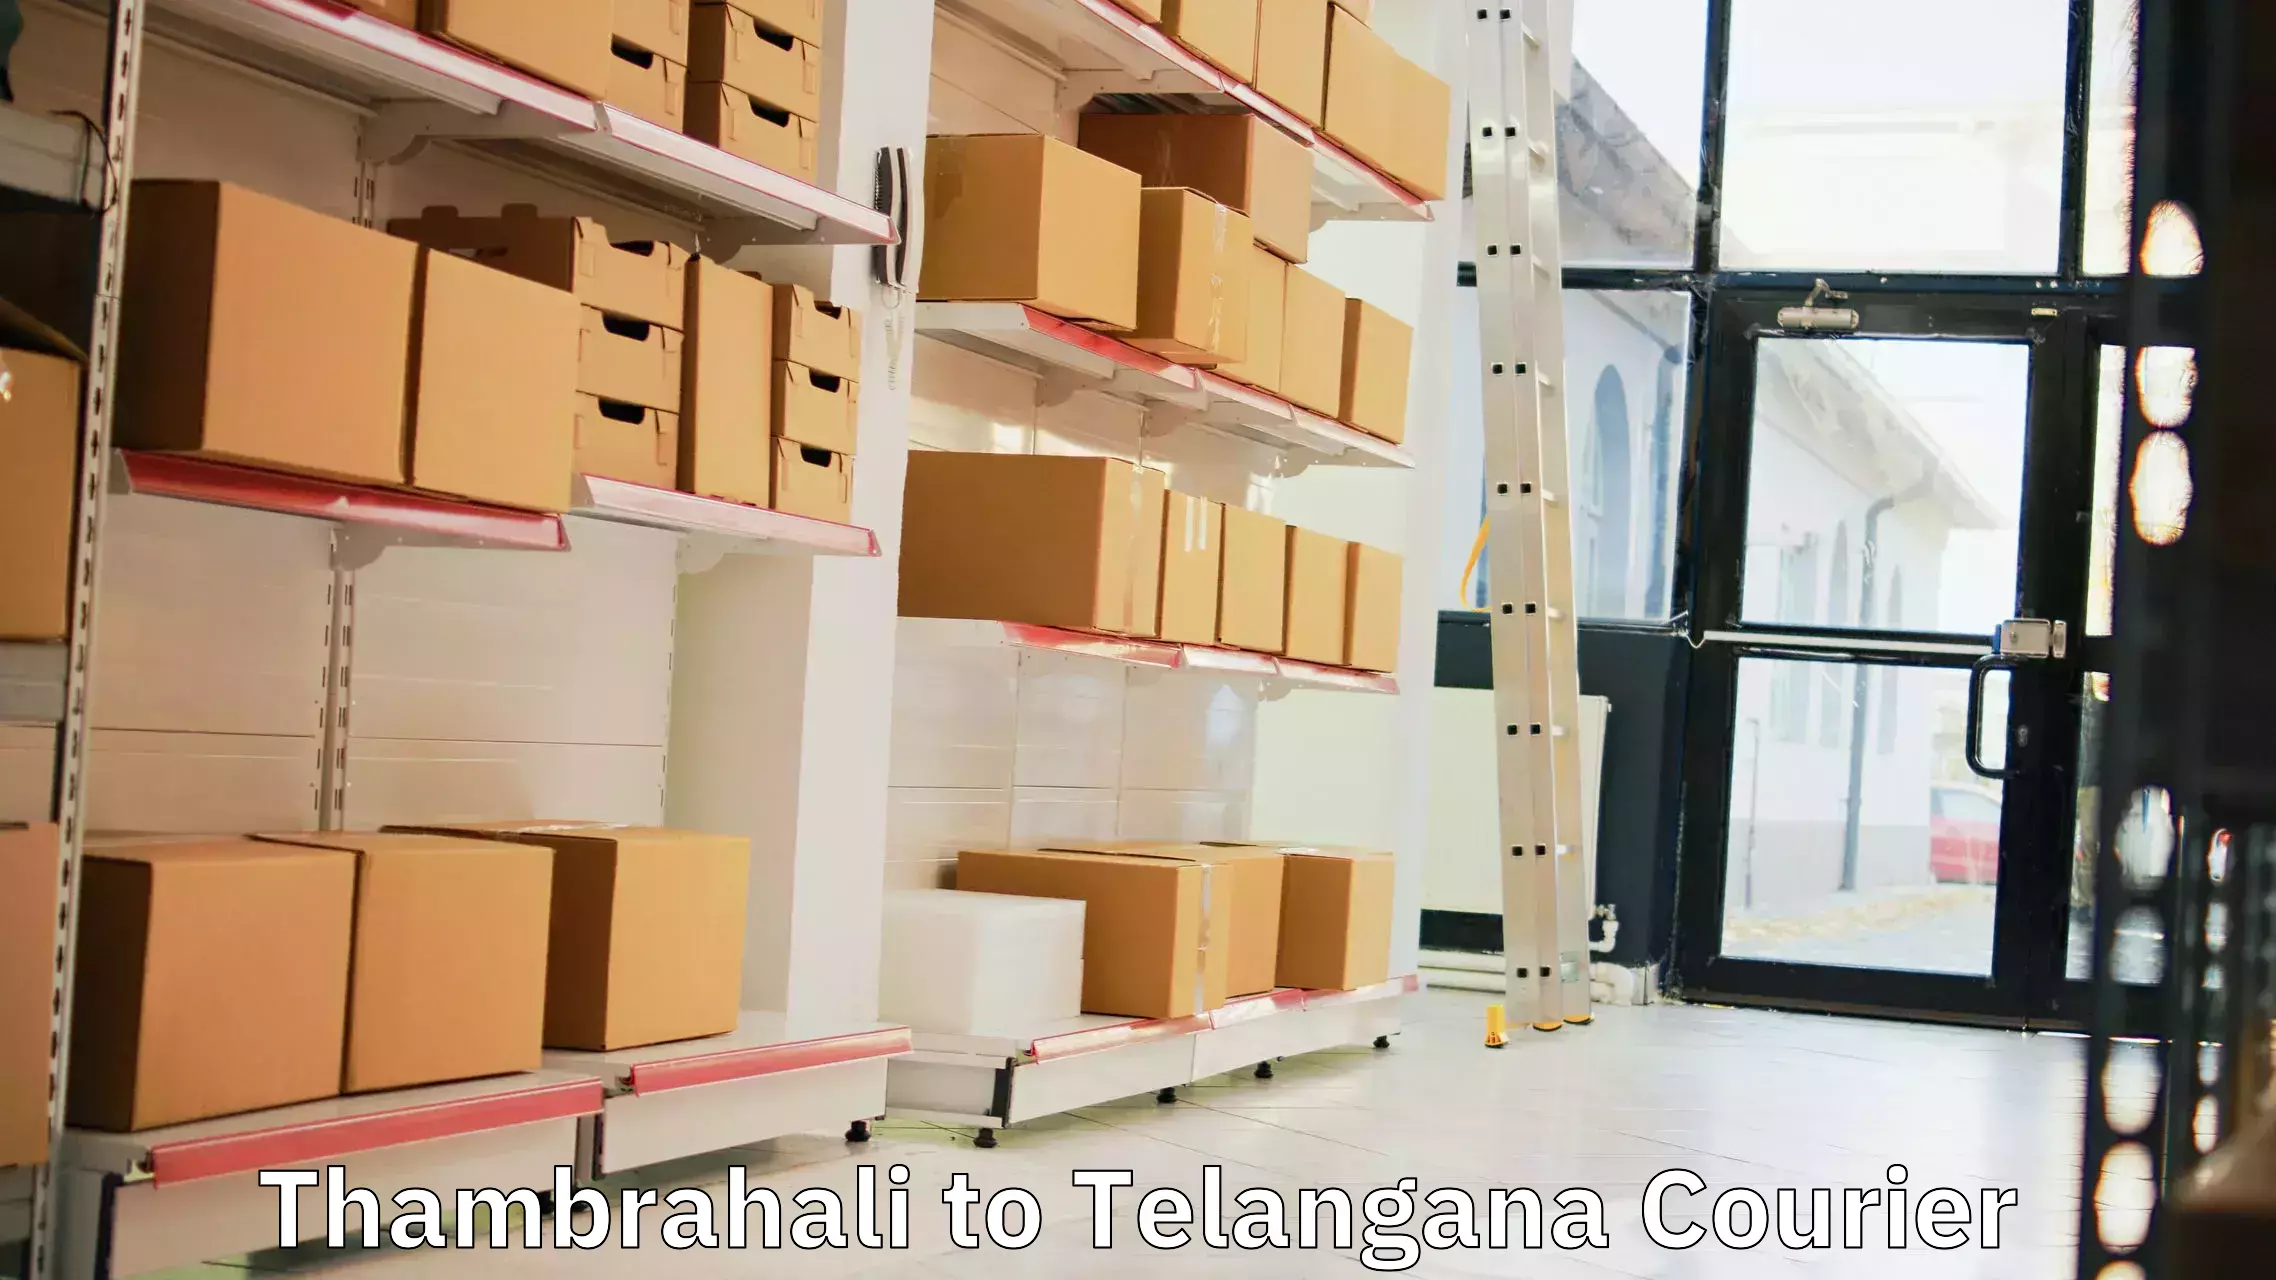 Global logistics network Thambrahali to Bellal Tarafa Bodhan